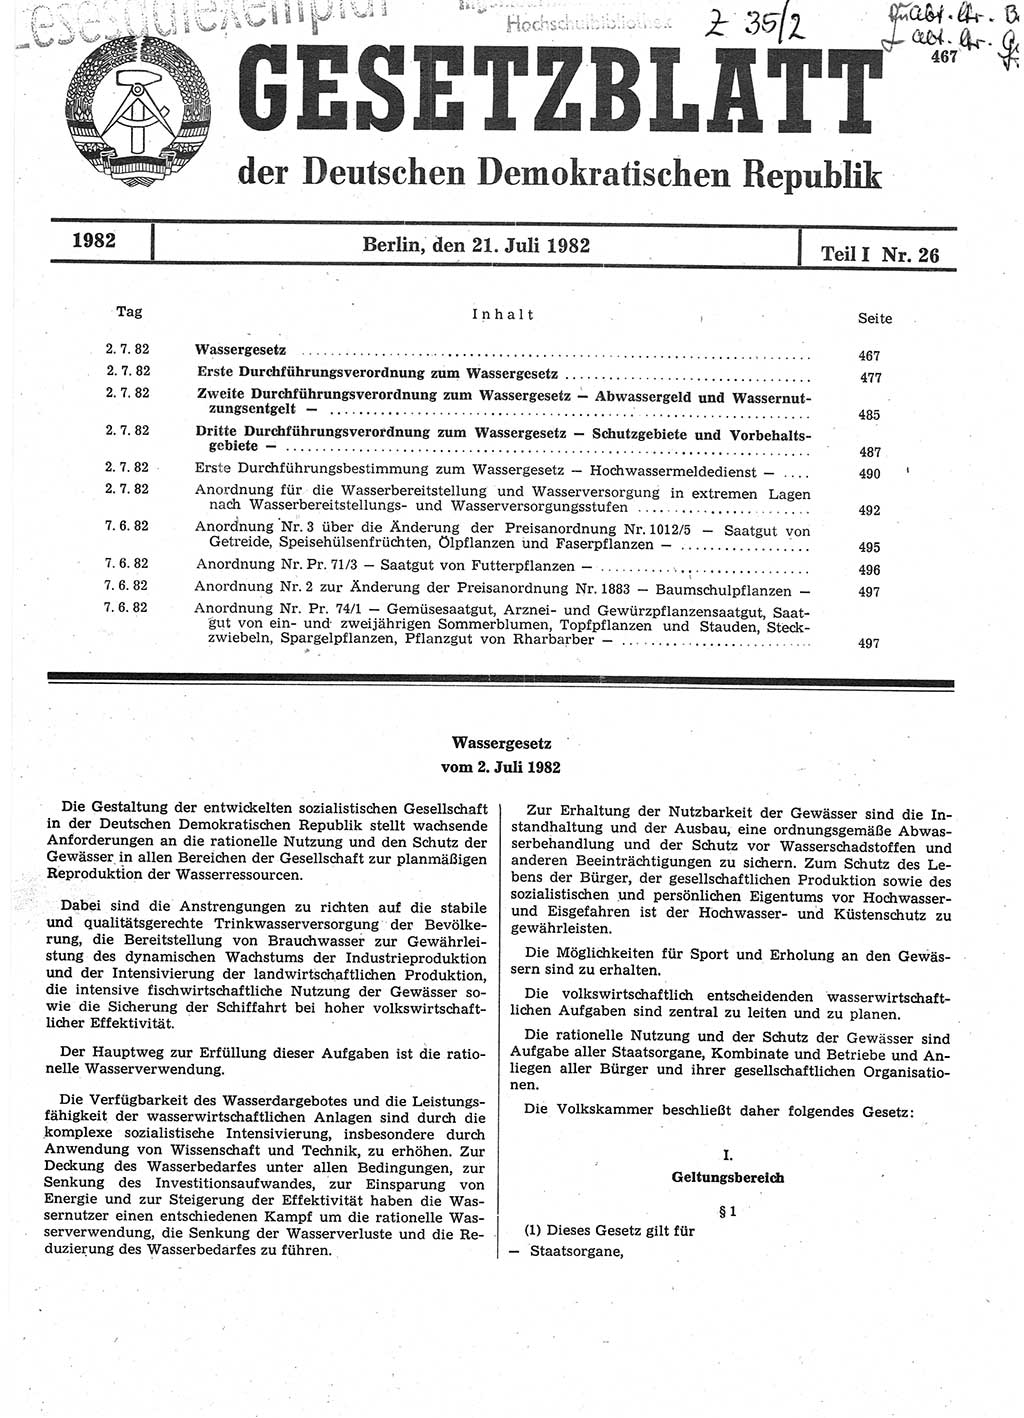 Gesetzblatt (GBl.) der Deutschen Demokratischen Republik (DDR) Teil Ⅰ 1982, Seite 467 (GBl. DDR Ⅰ 1982, S. 467)